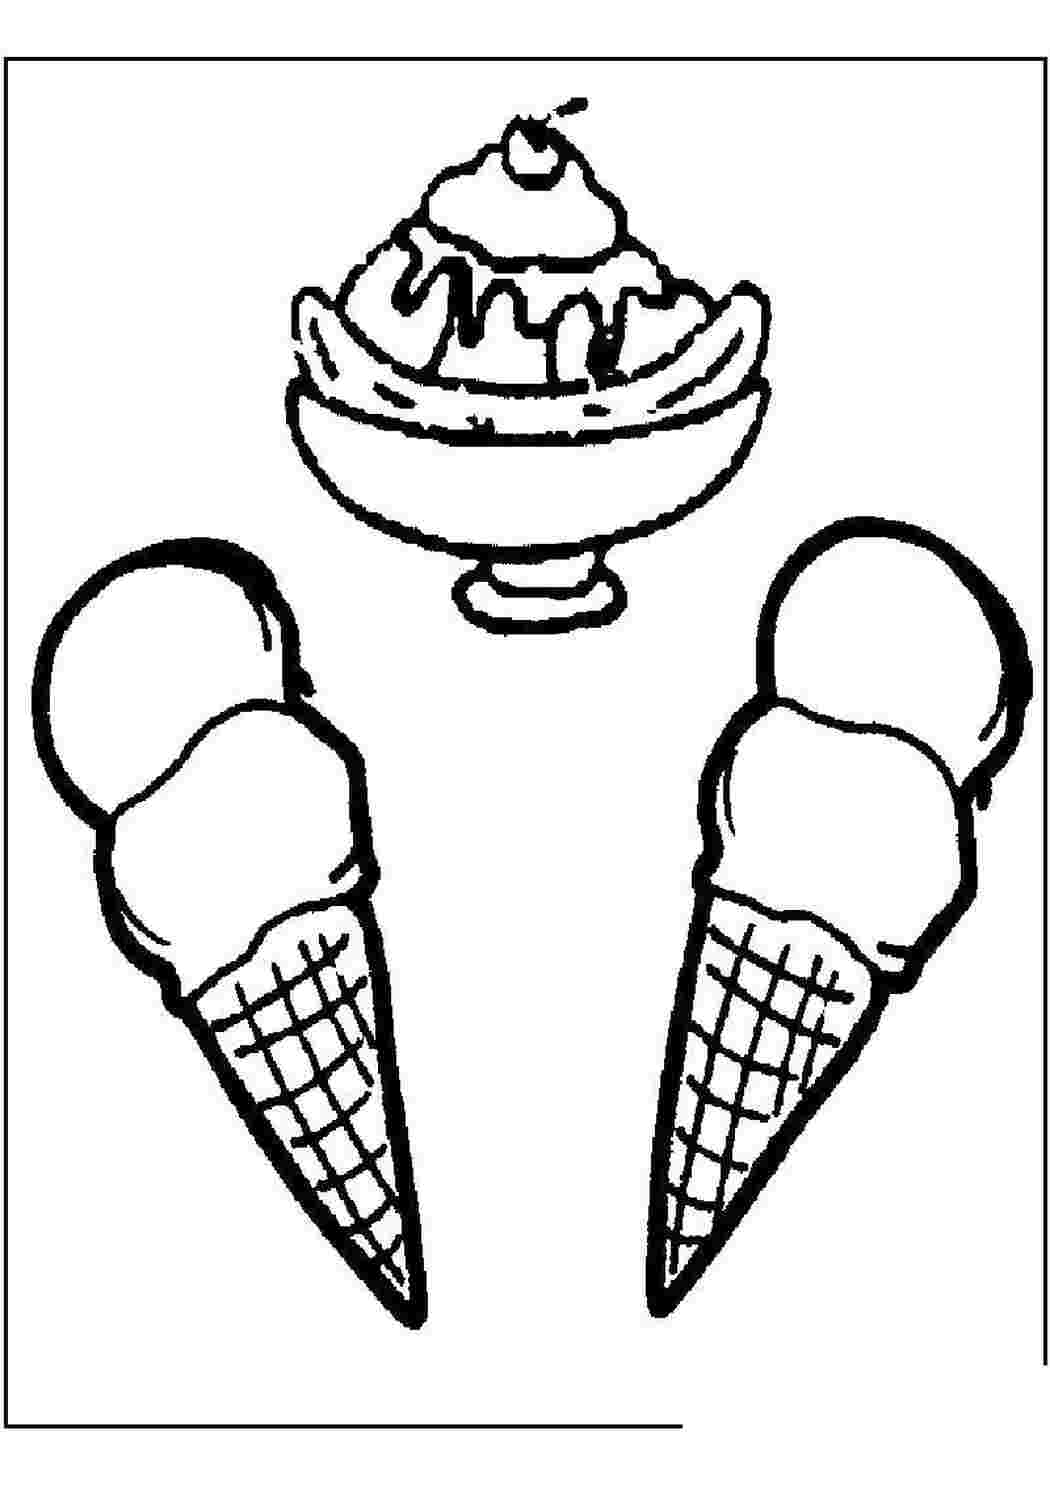 Раскраска мороженщик. Раскраска мороженое. Мороженое раскраска для детей. Картинка мороженое раскраска. Раскраска для девочек мороженое.